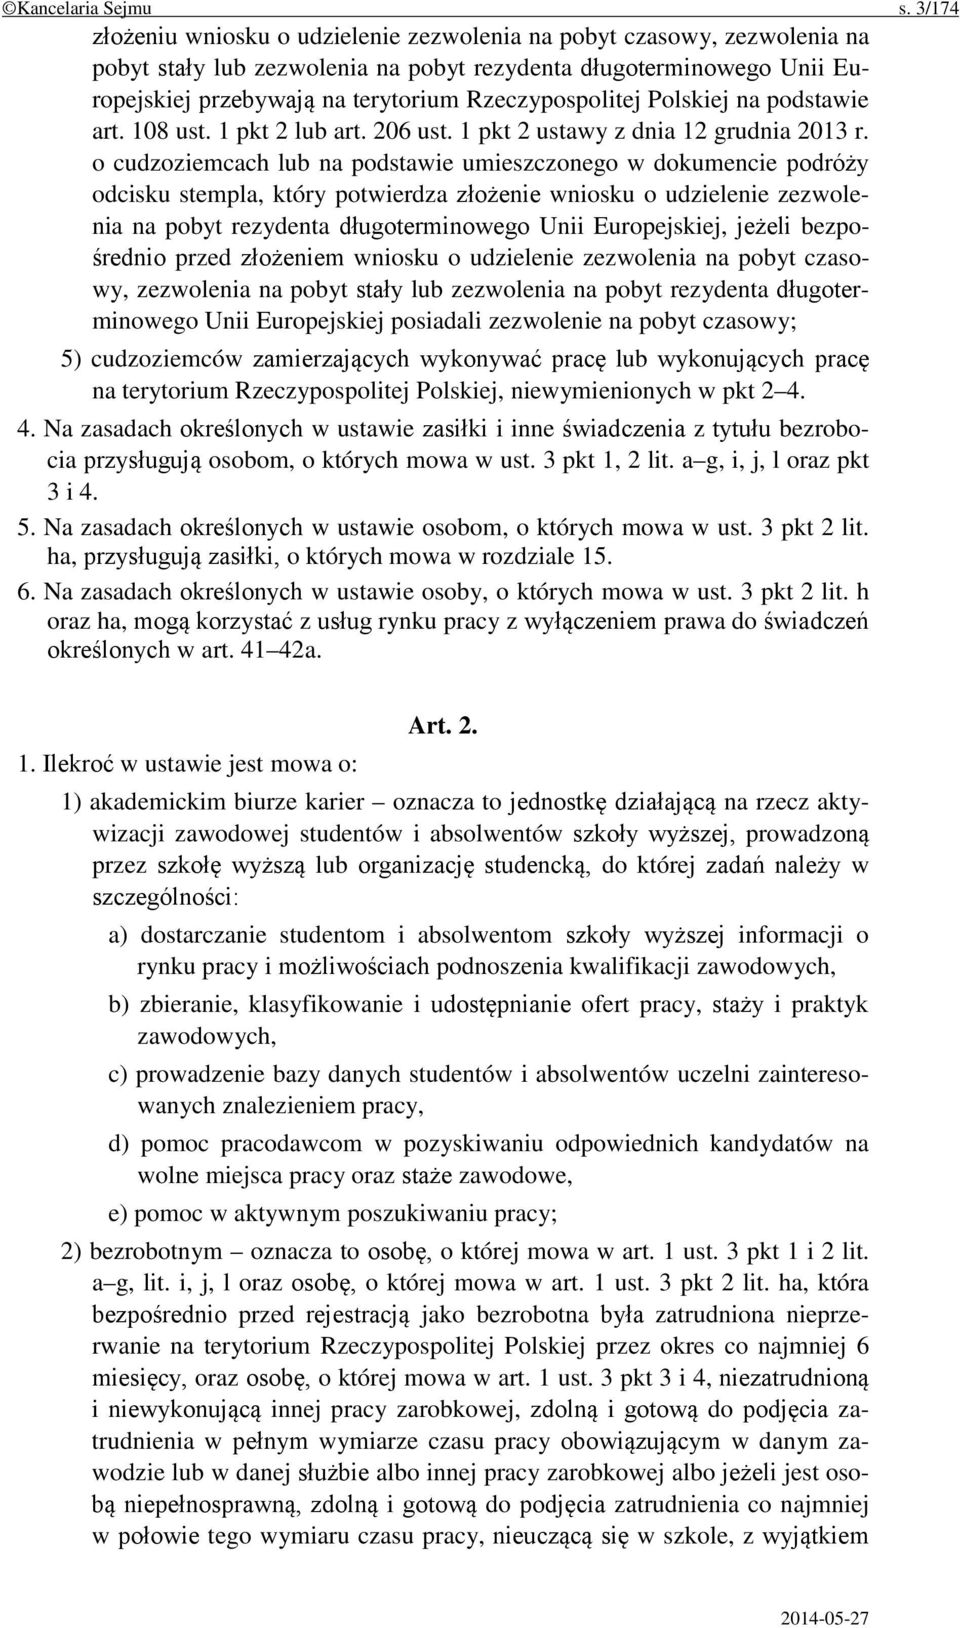 Rzeczypospolitej Polskiej na podstawie art. 108 ust. 1 pkt 2 lub art. 206 ust. 1 pkt 2 ustawy z dnia 12 grudnia 2013 r.